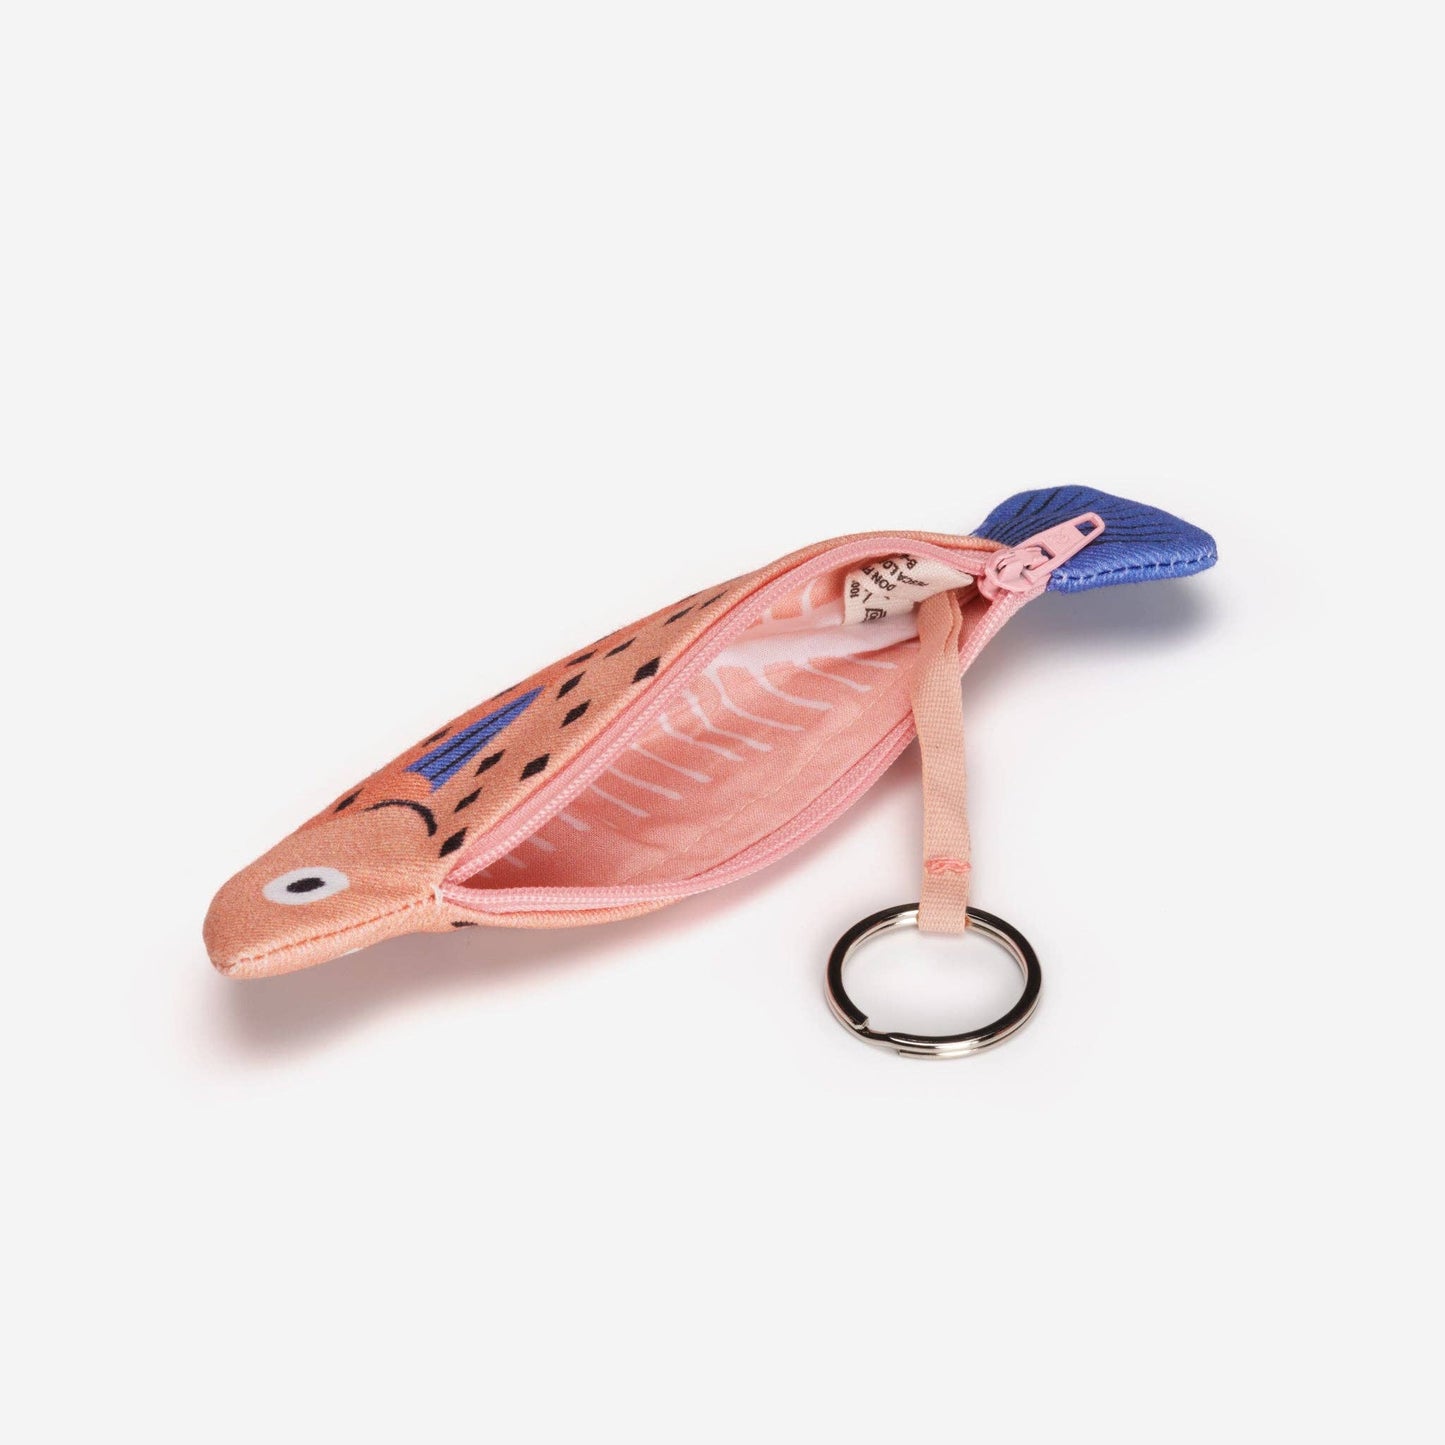 Pencil case / key ring Whiting pink: Key ring